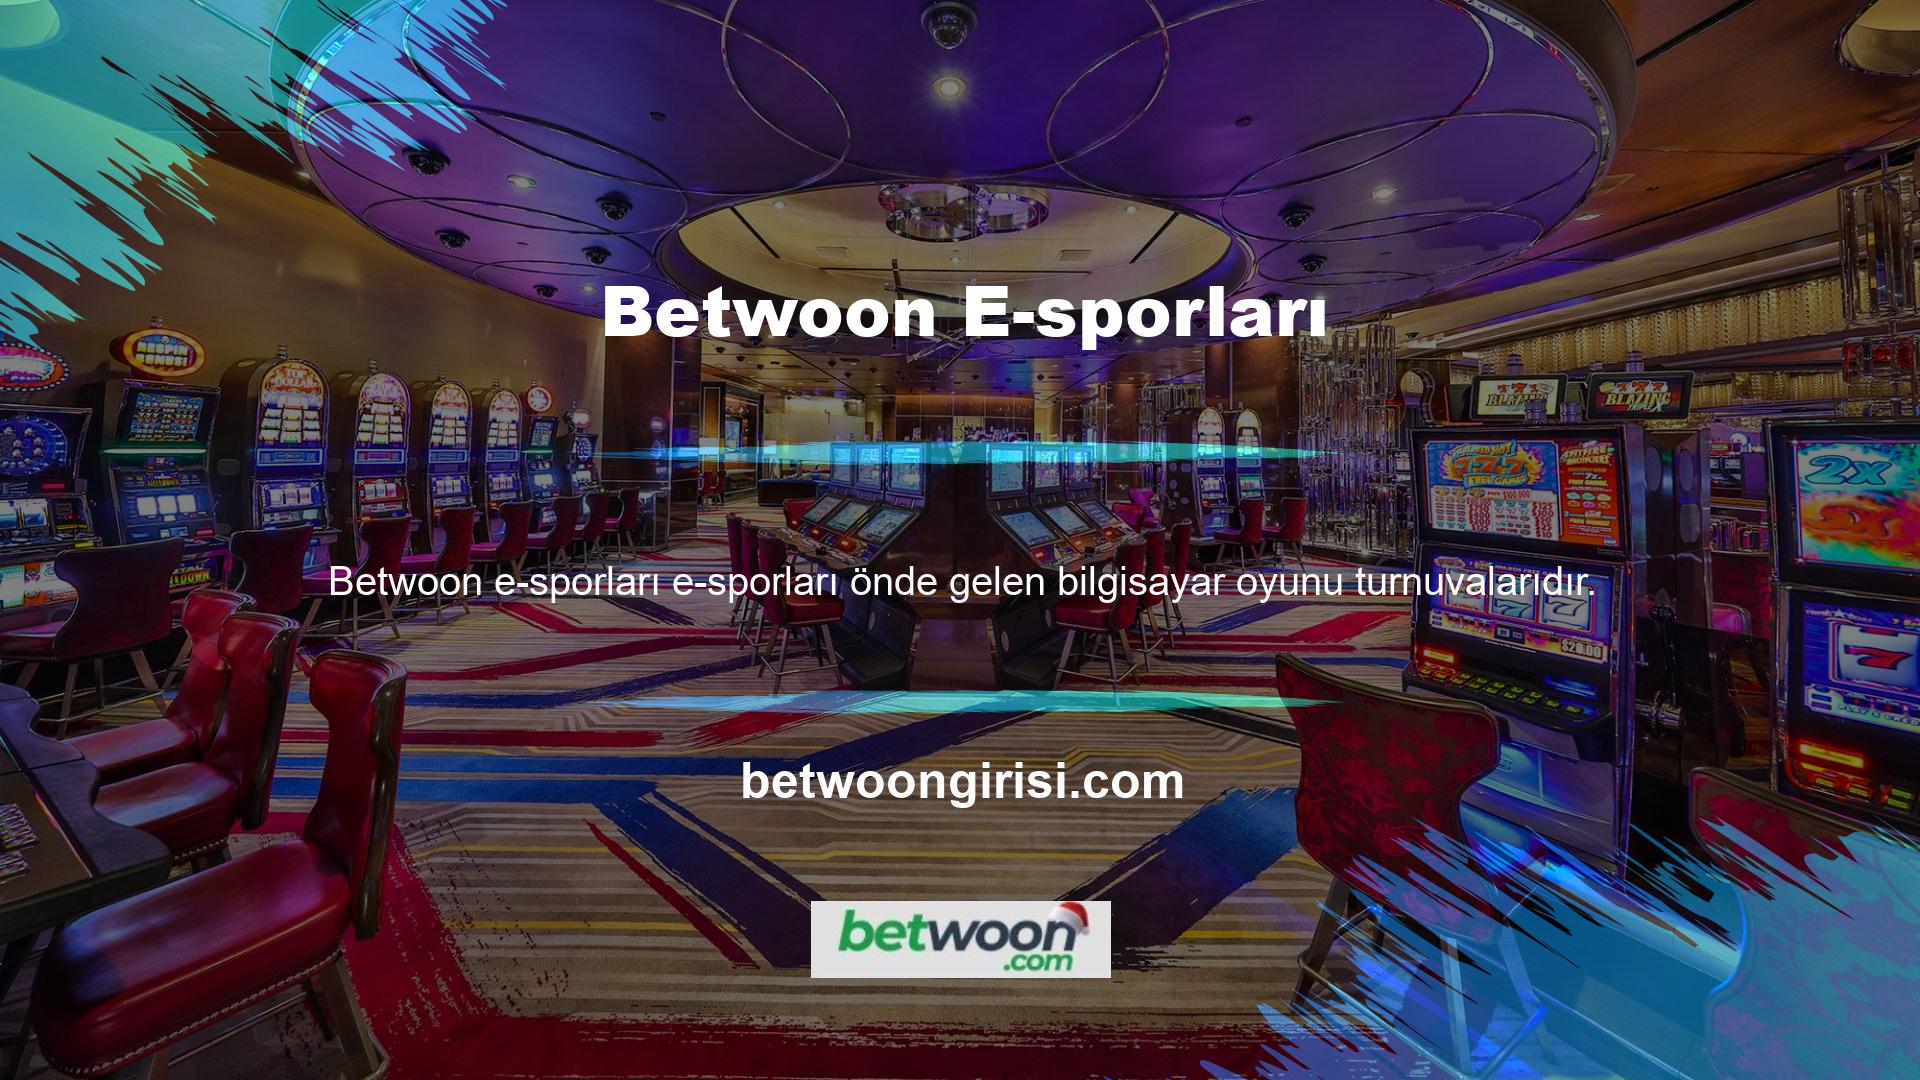 Betwoon, bahis kategorisinde E-spor turnuvalarının gidişatına bahis yapmanızı sağlayan içerikler eklemiştir